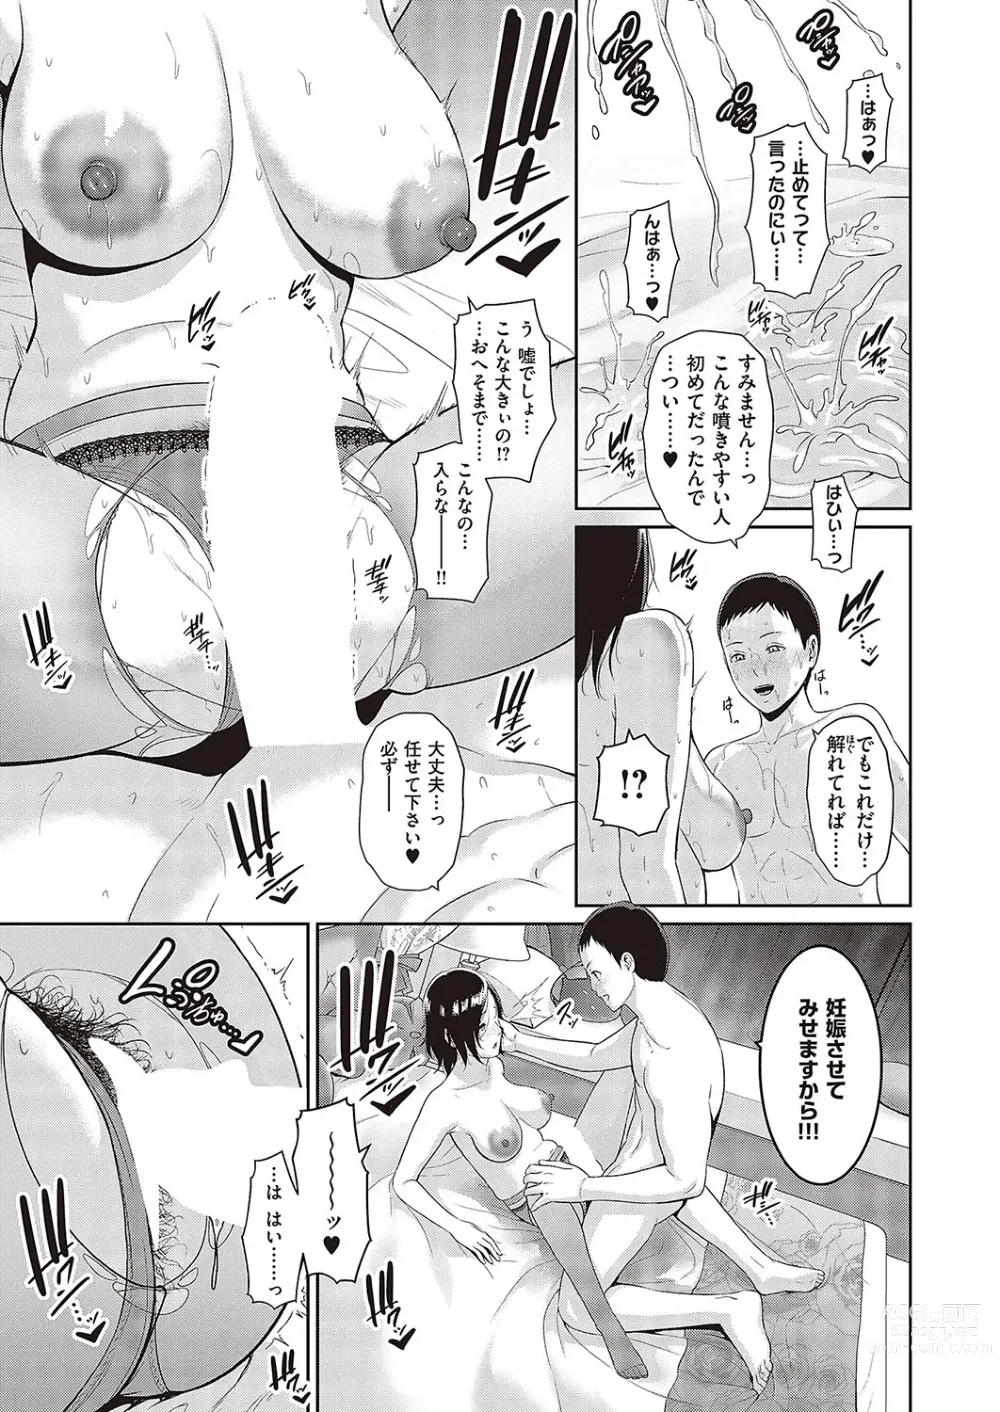 Page 15 of manga 種付けマッチングアプリ Cap.1-2